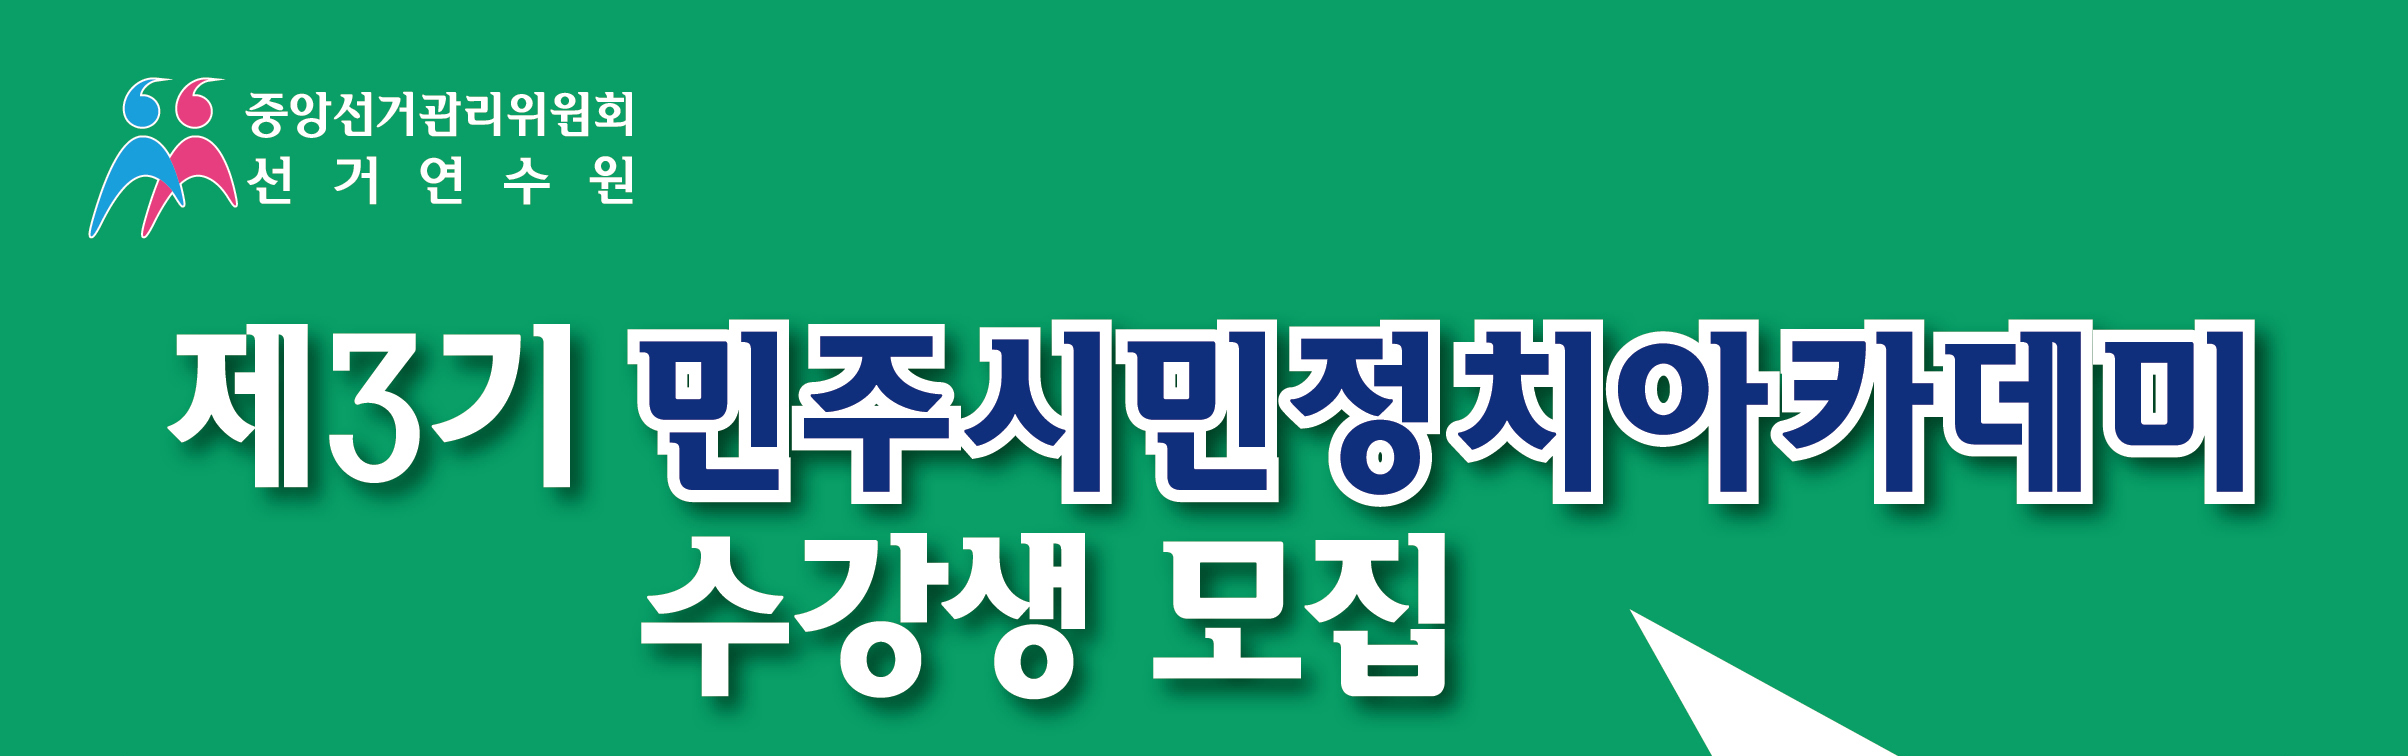 중앙선거관리위원회 선거연수원. 제3기 민주시민정치아카데미 수강생모집